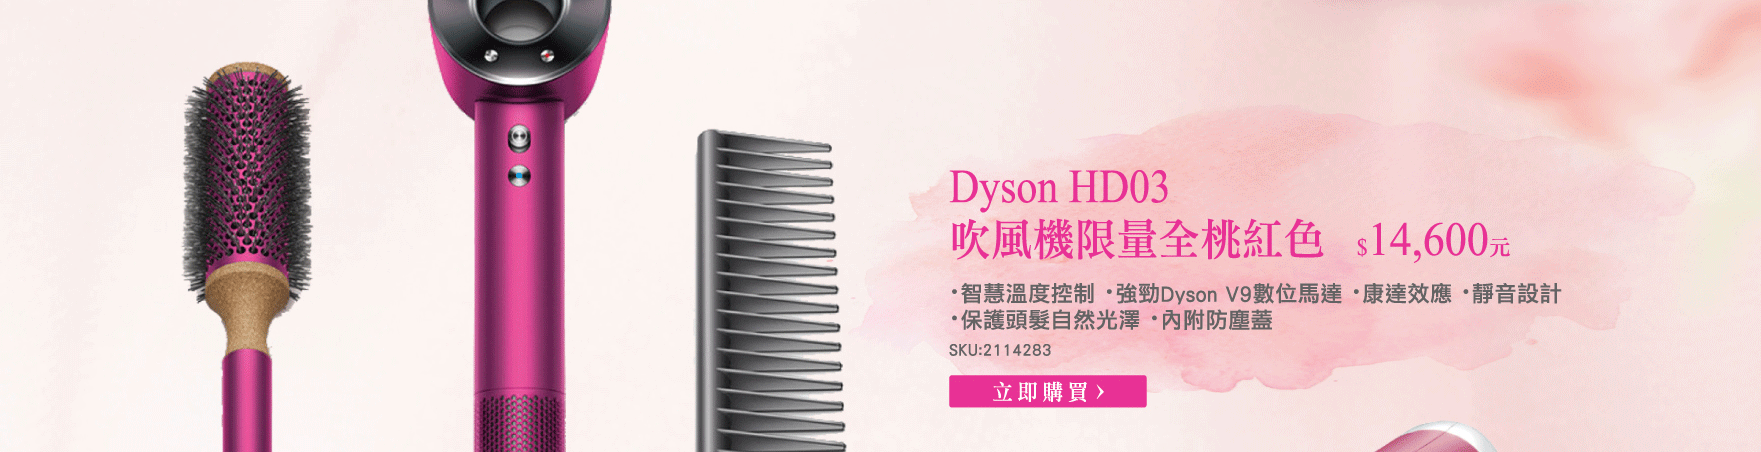 Dyson HD03 吹風機限量全桃紅色 DYSONHD03LIMITFUCHSIA